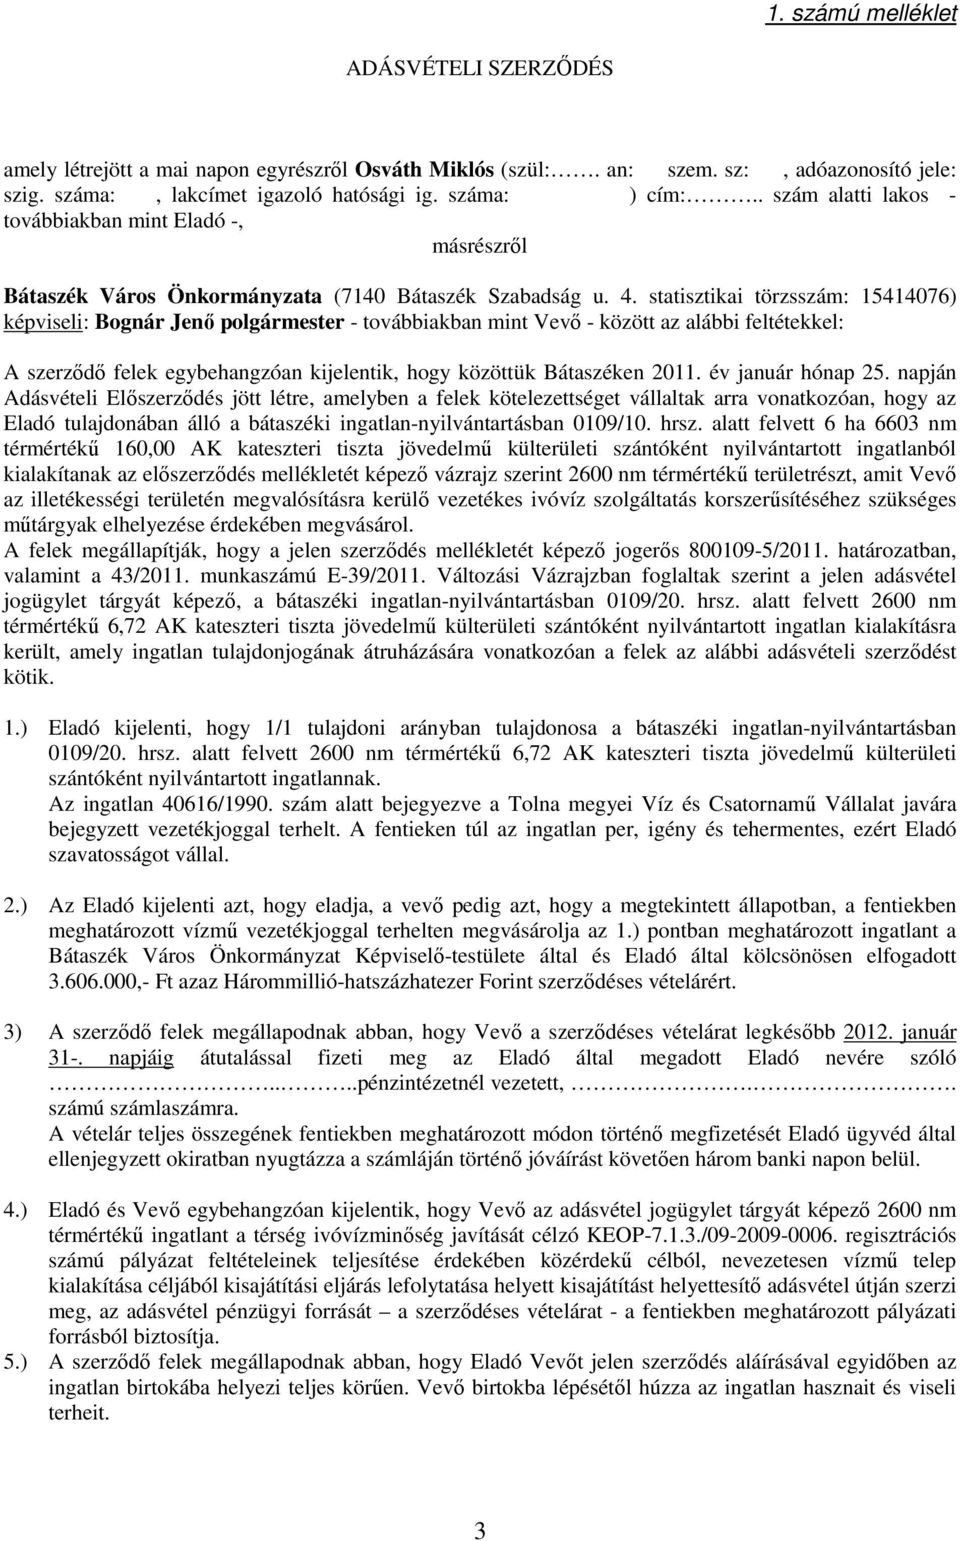 statisztikai törzsszám: 15414076) képviseli: Bognár Jenı polgármester - továbbiakban mint Vevı - között az alábbi feltétekkel: A szerzıdı felek egybehangzóan kijelentik, hogy közöttük Bátaszéken 2011.